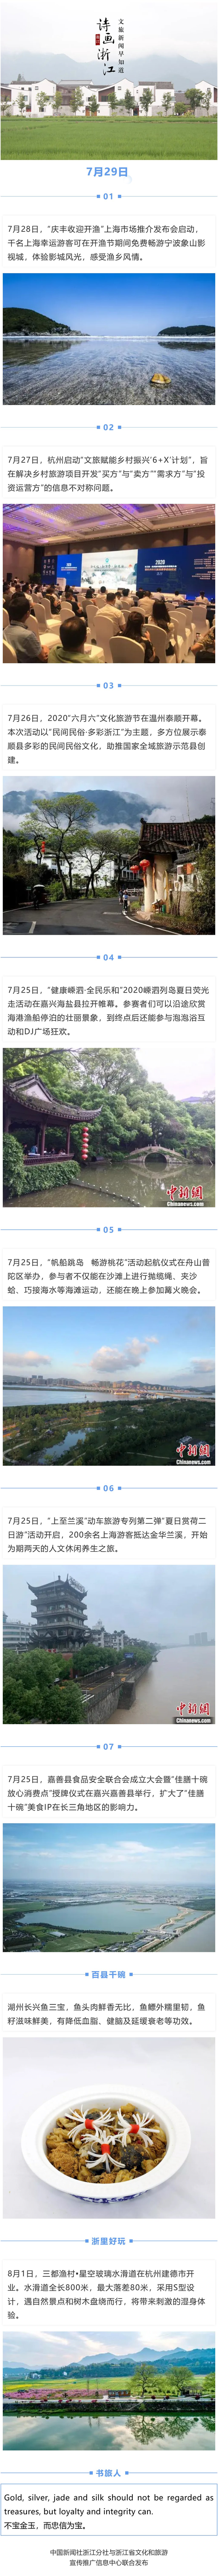 7月29日诗画浙江 文旅新闻早知道 中国新闻网 浙江新闻